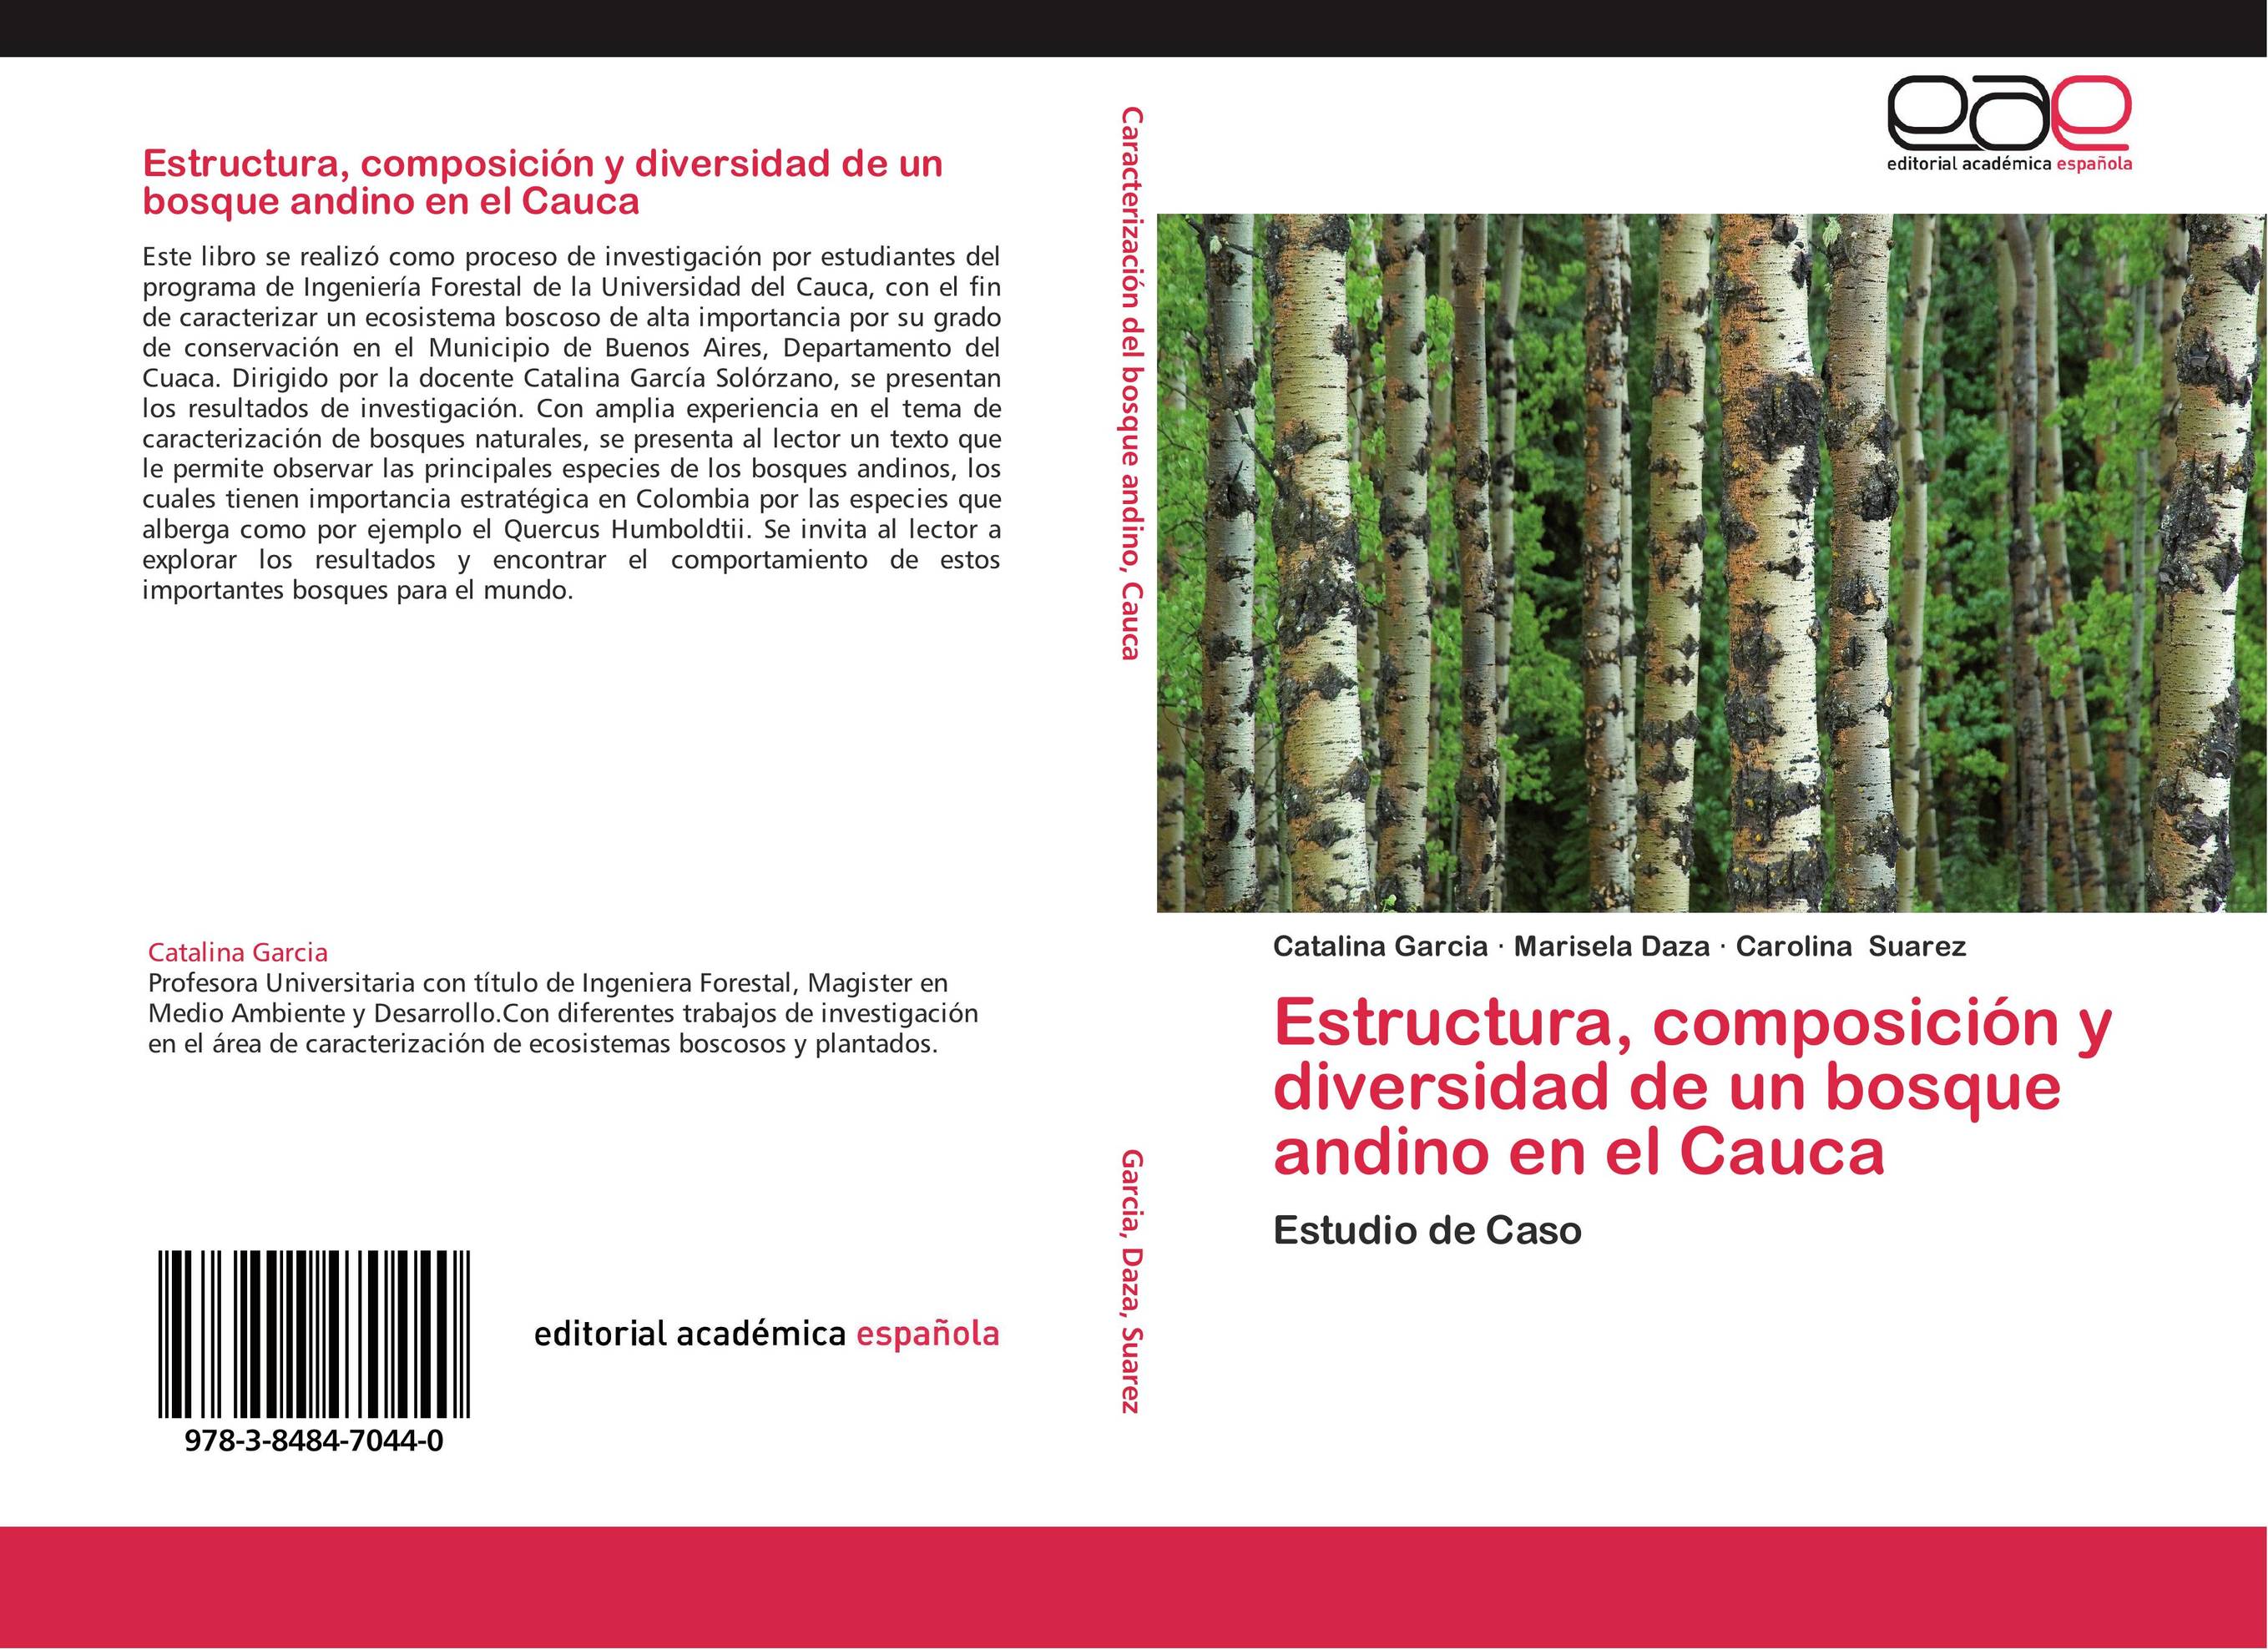 Estructura, composición y diversidad de un bosque andino en el Cauca